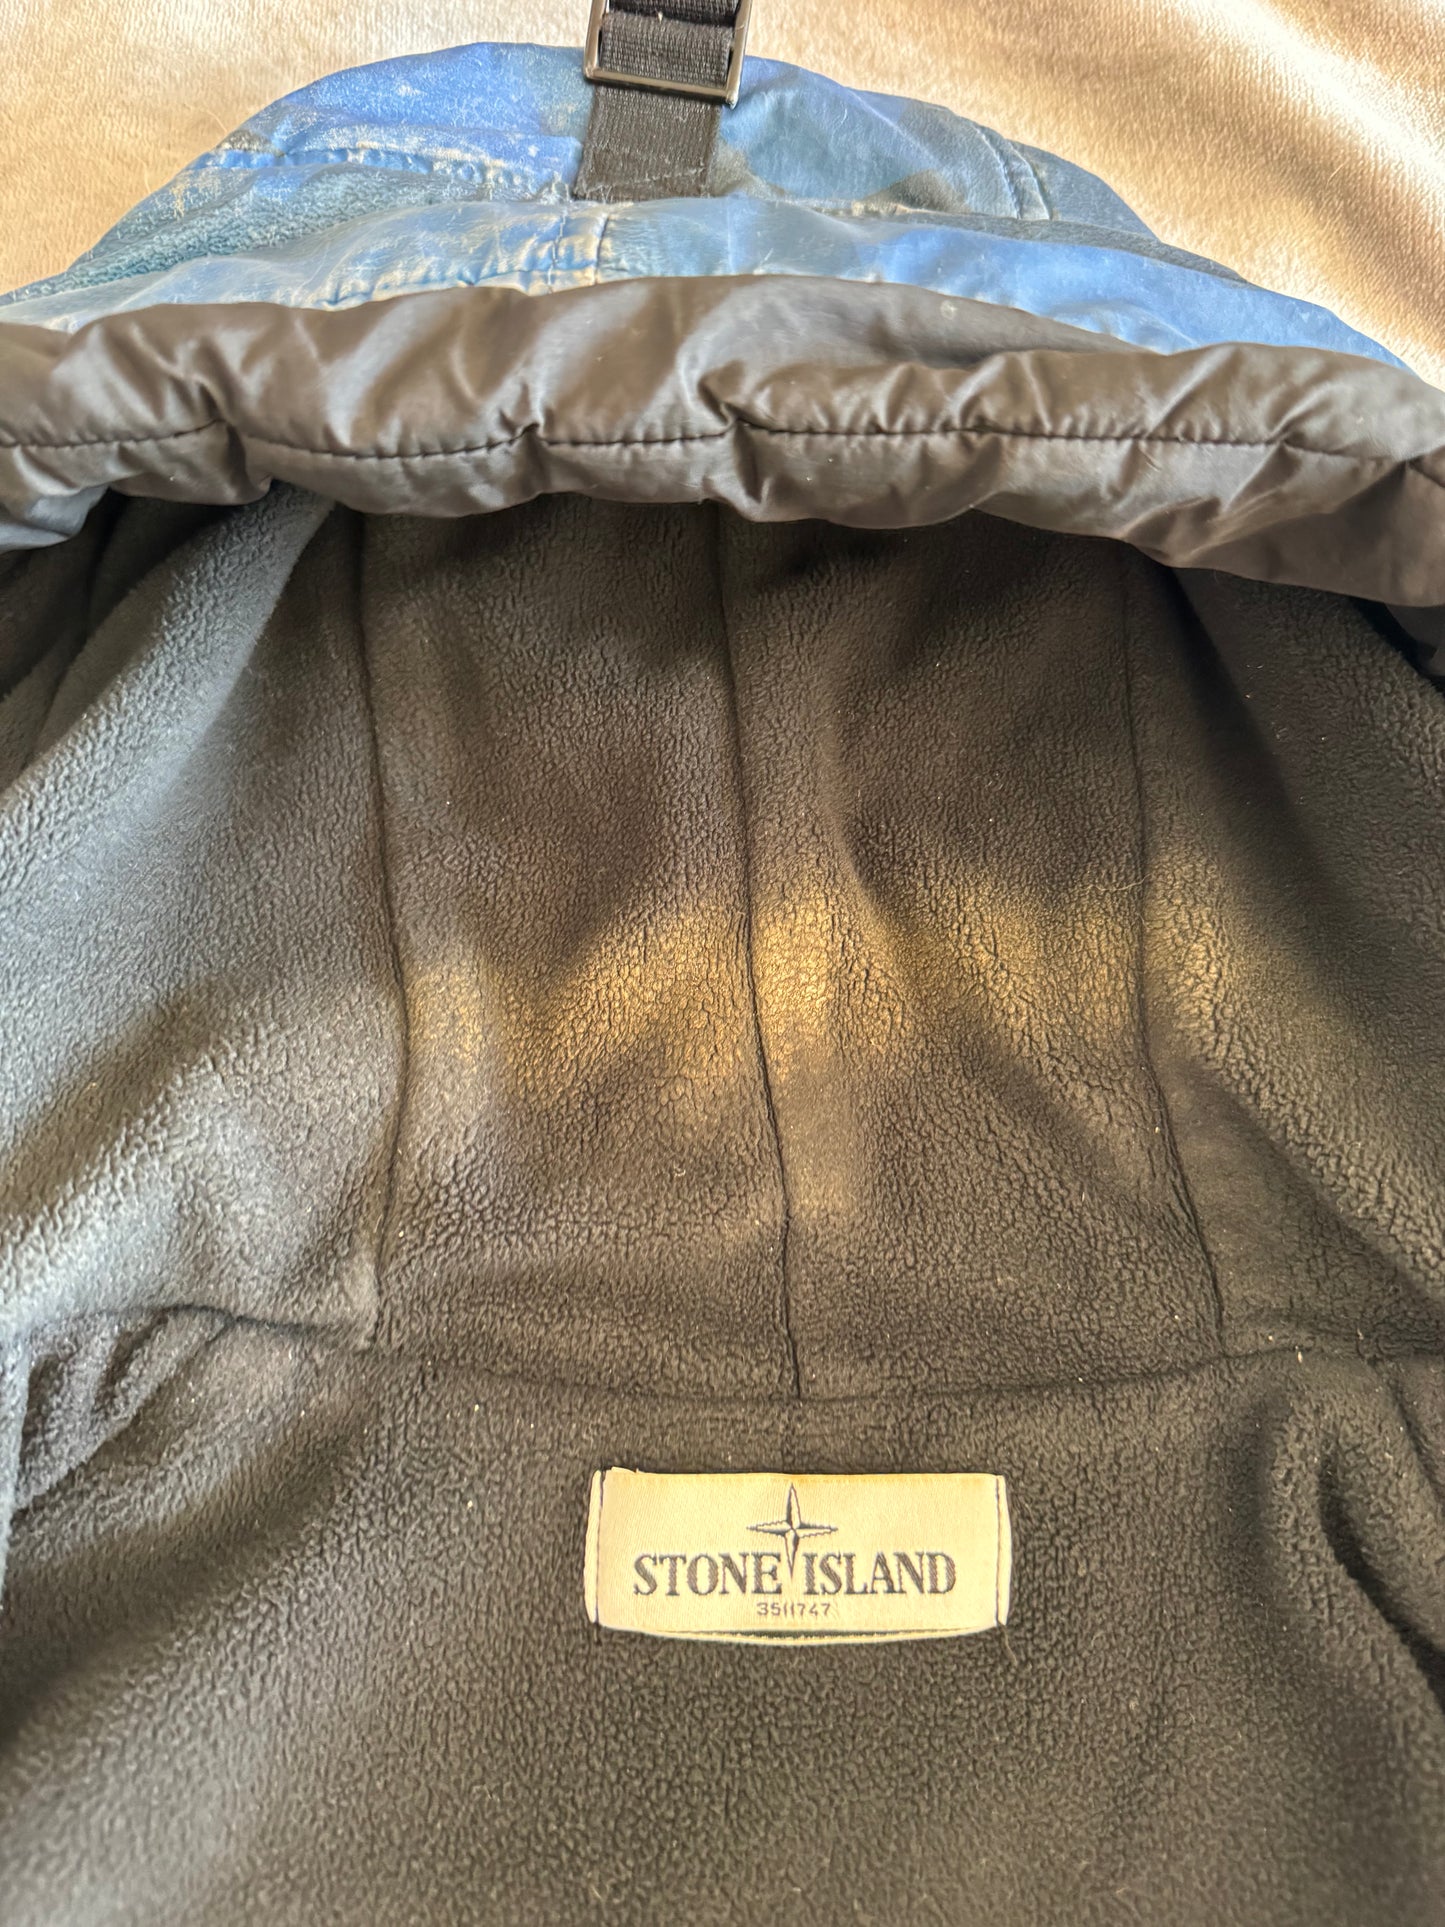 Stone Island 30th Anniversary ‘Camo Reflective’ Jacket - Medium